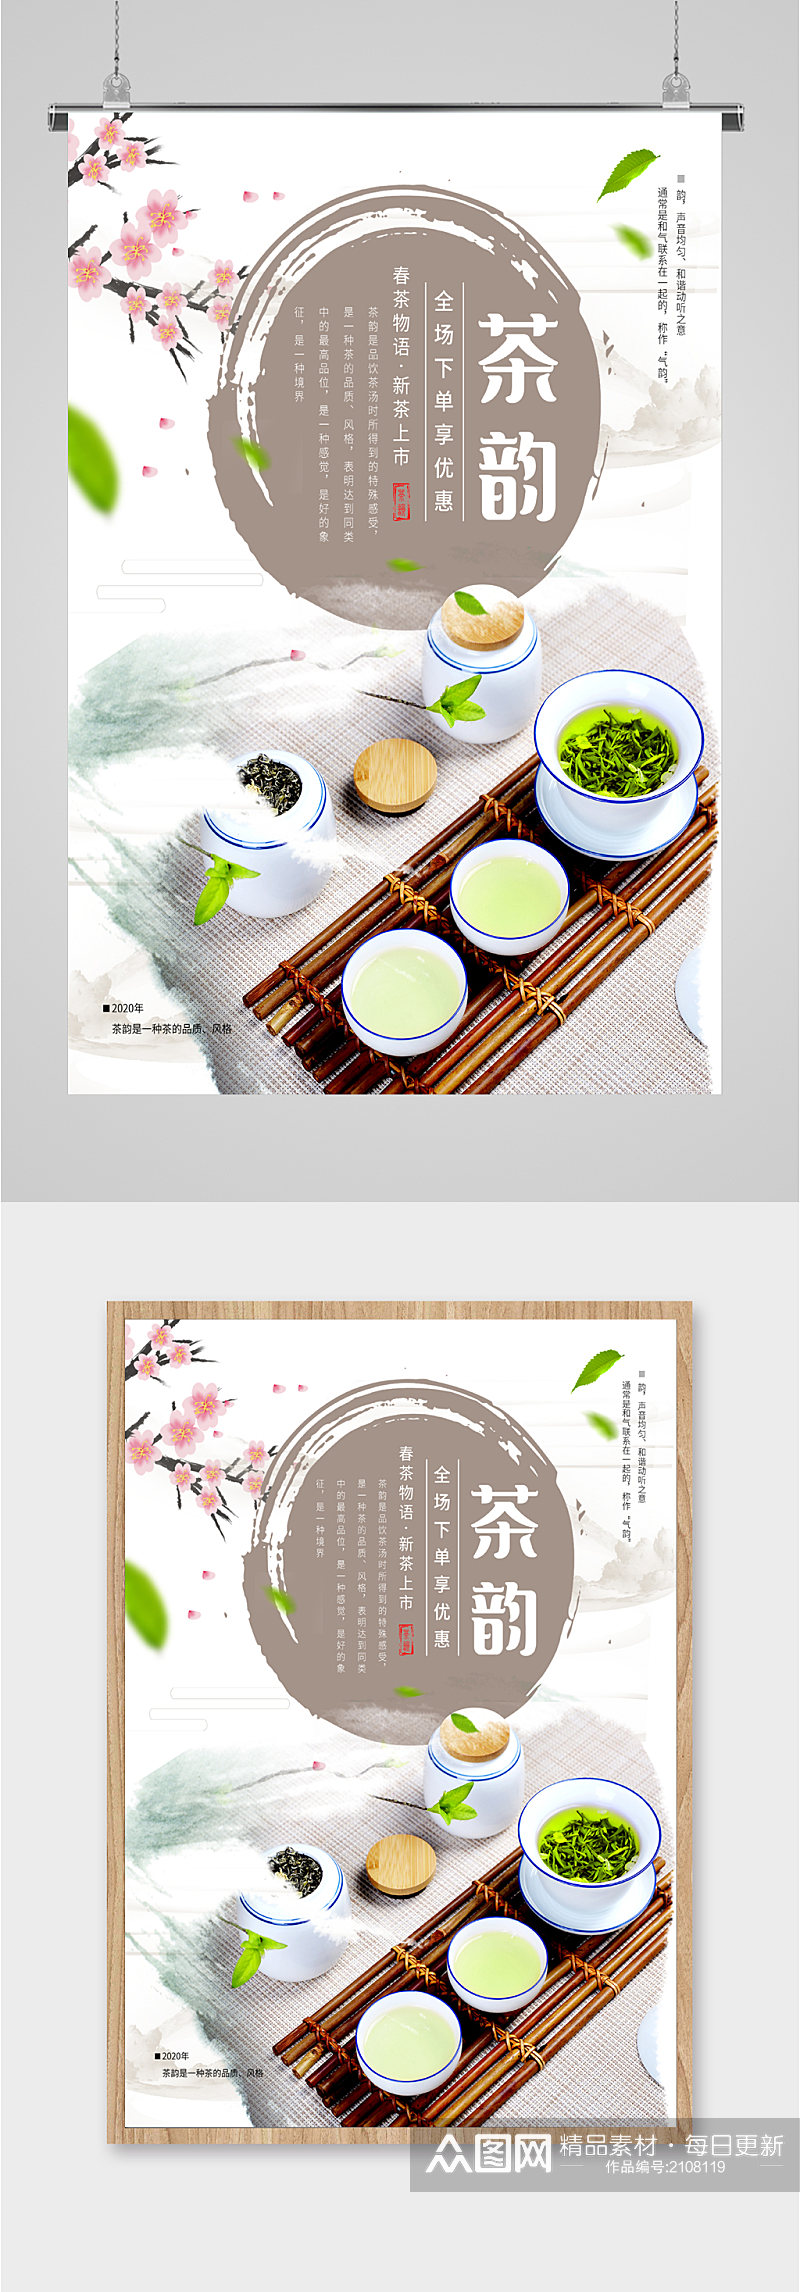 茶韵茶道茶文化海报素材